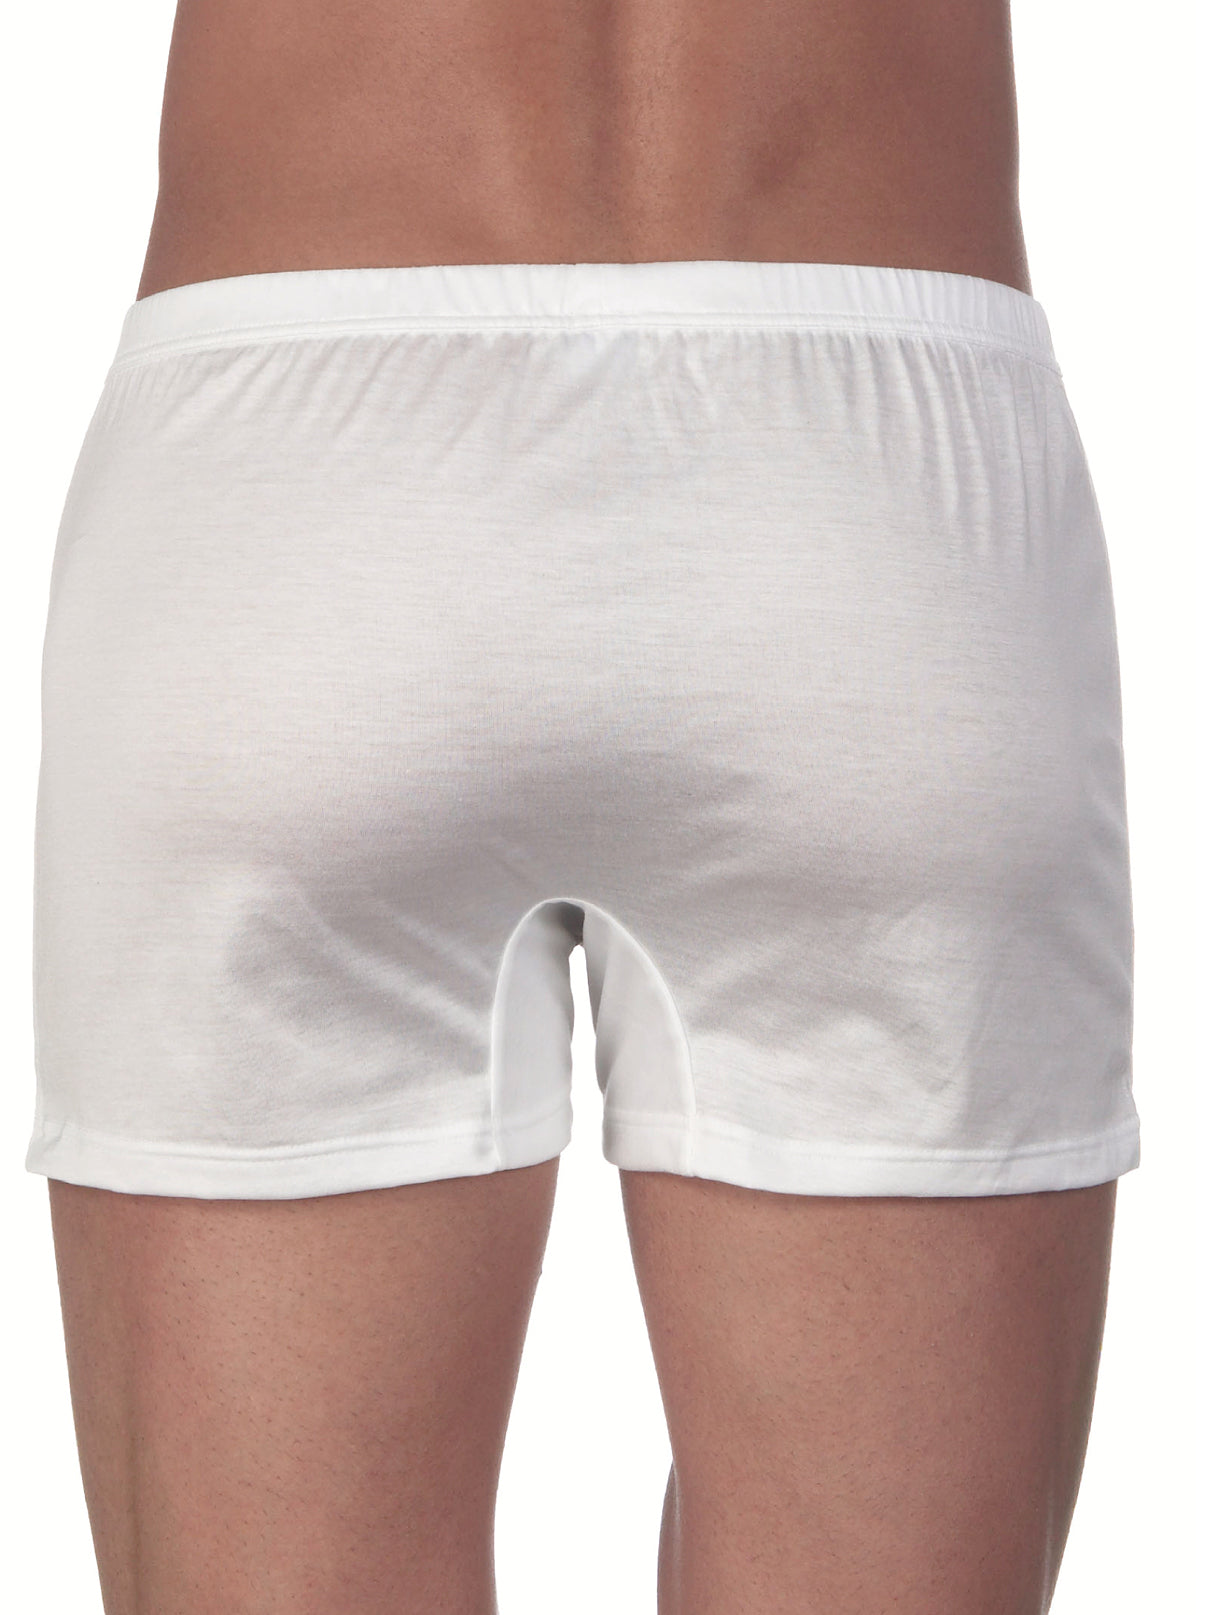 POKARLA Mens Stretch Boxer Briefs Soft Cotton Open Fly Underwear